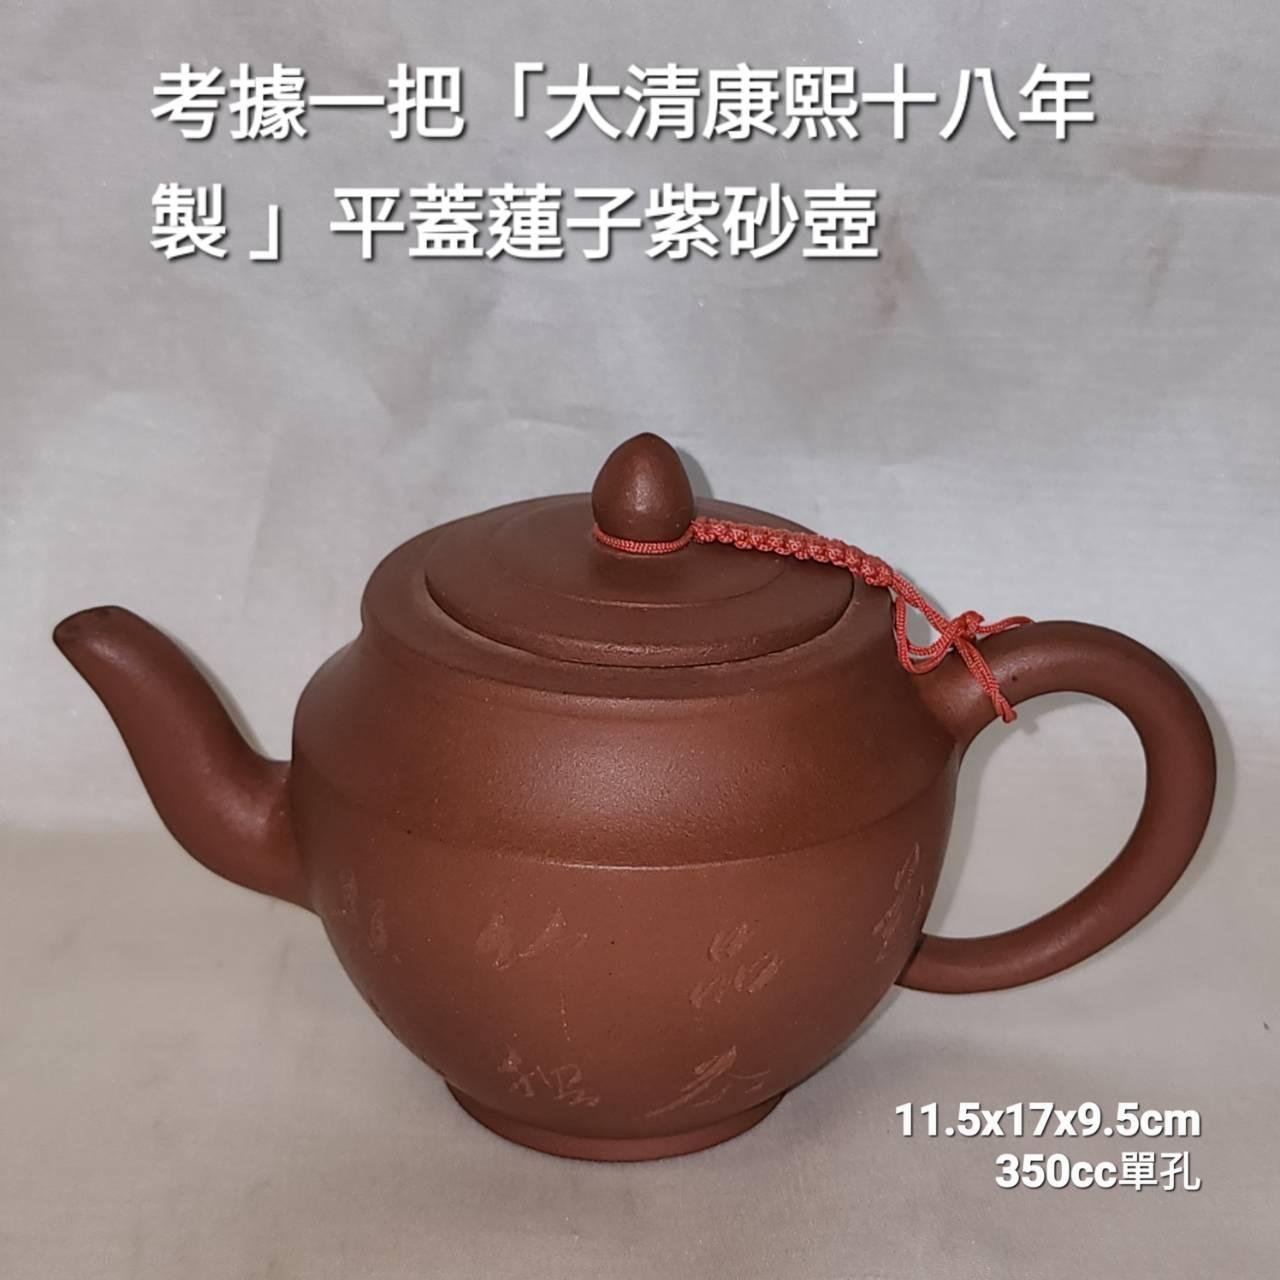 考據一把「大清康熙十八年製」平蓋蓮子紫砂壺由宜興地方進貢給皇室的 